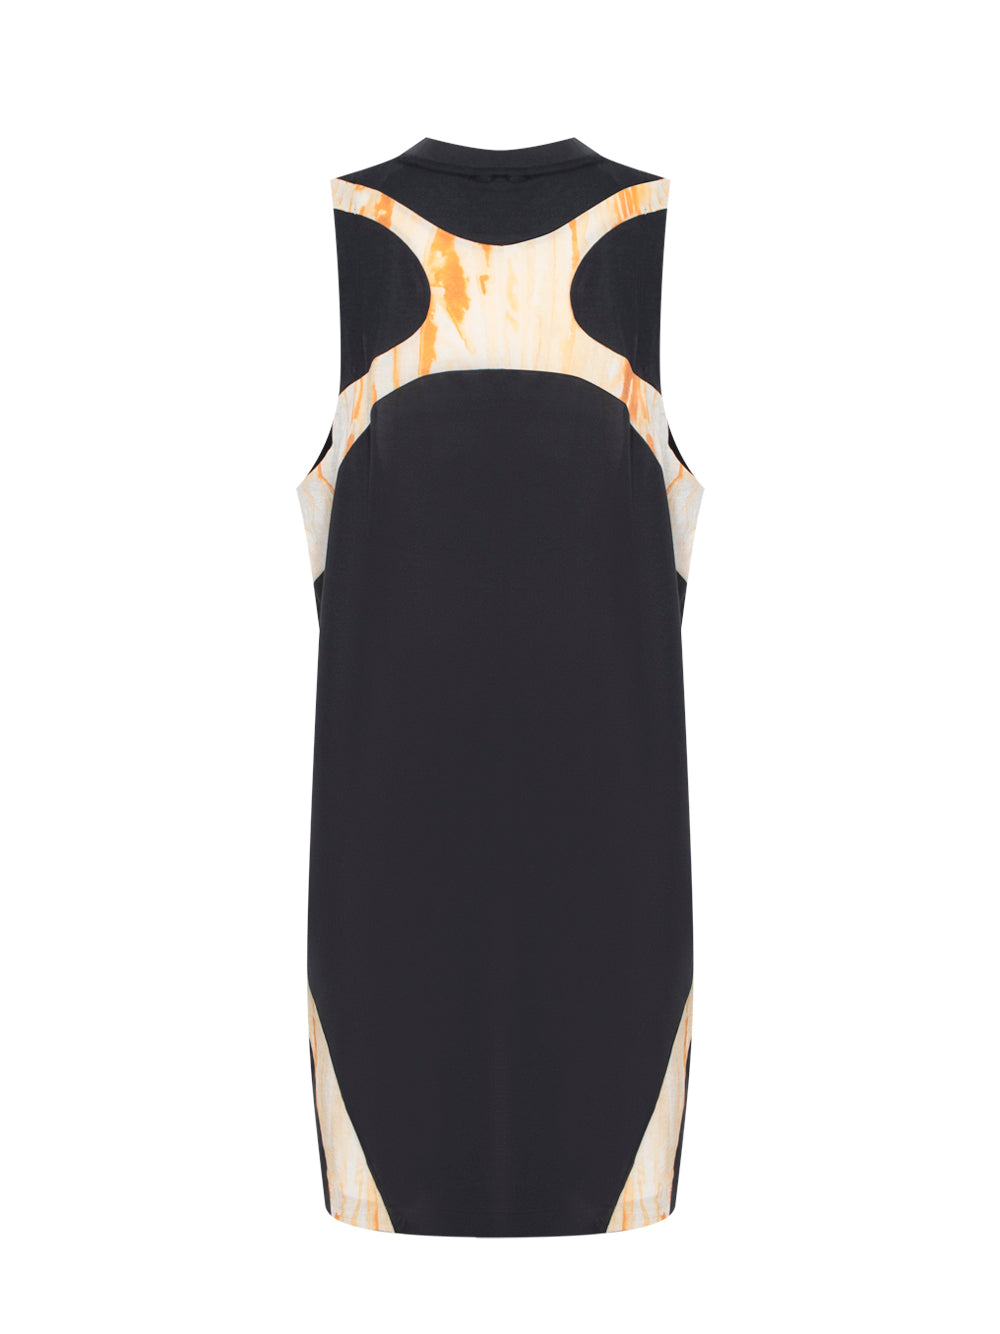 Rust Dye Tank Dress (Black / Multicolor)